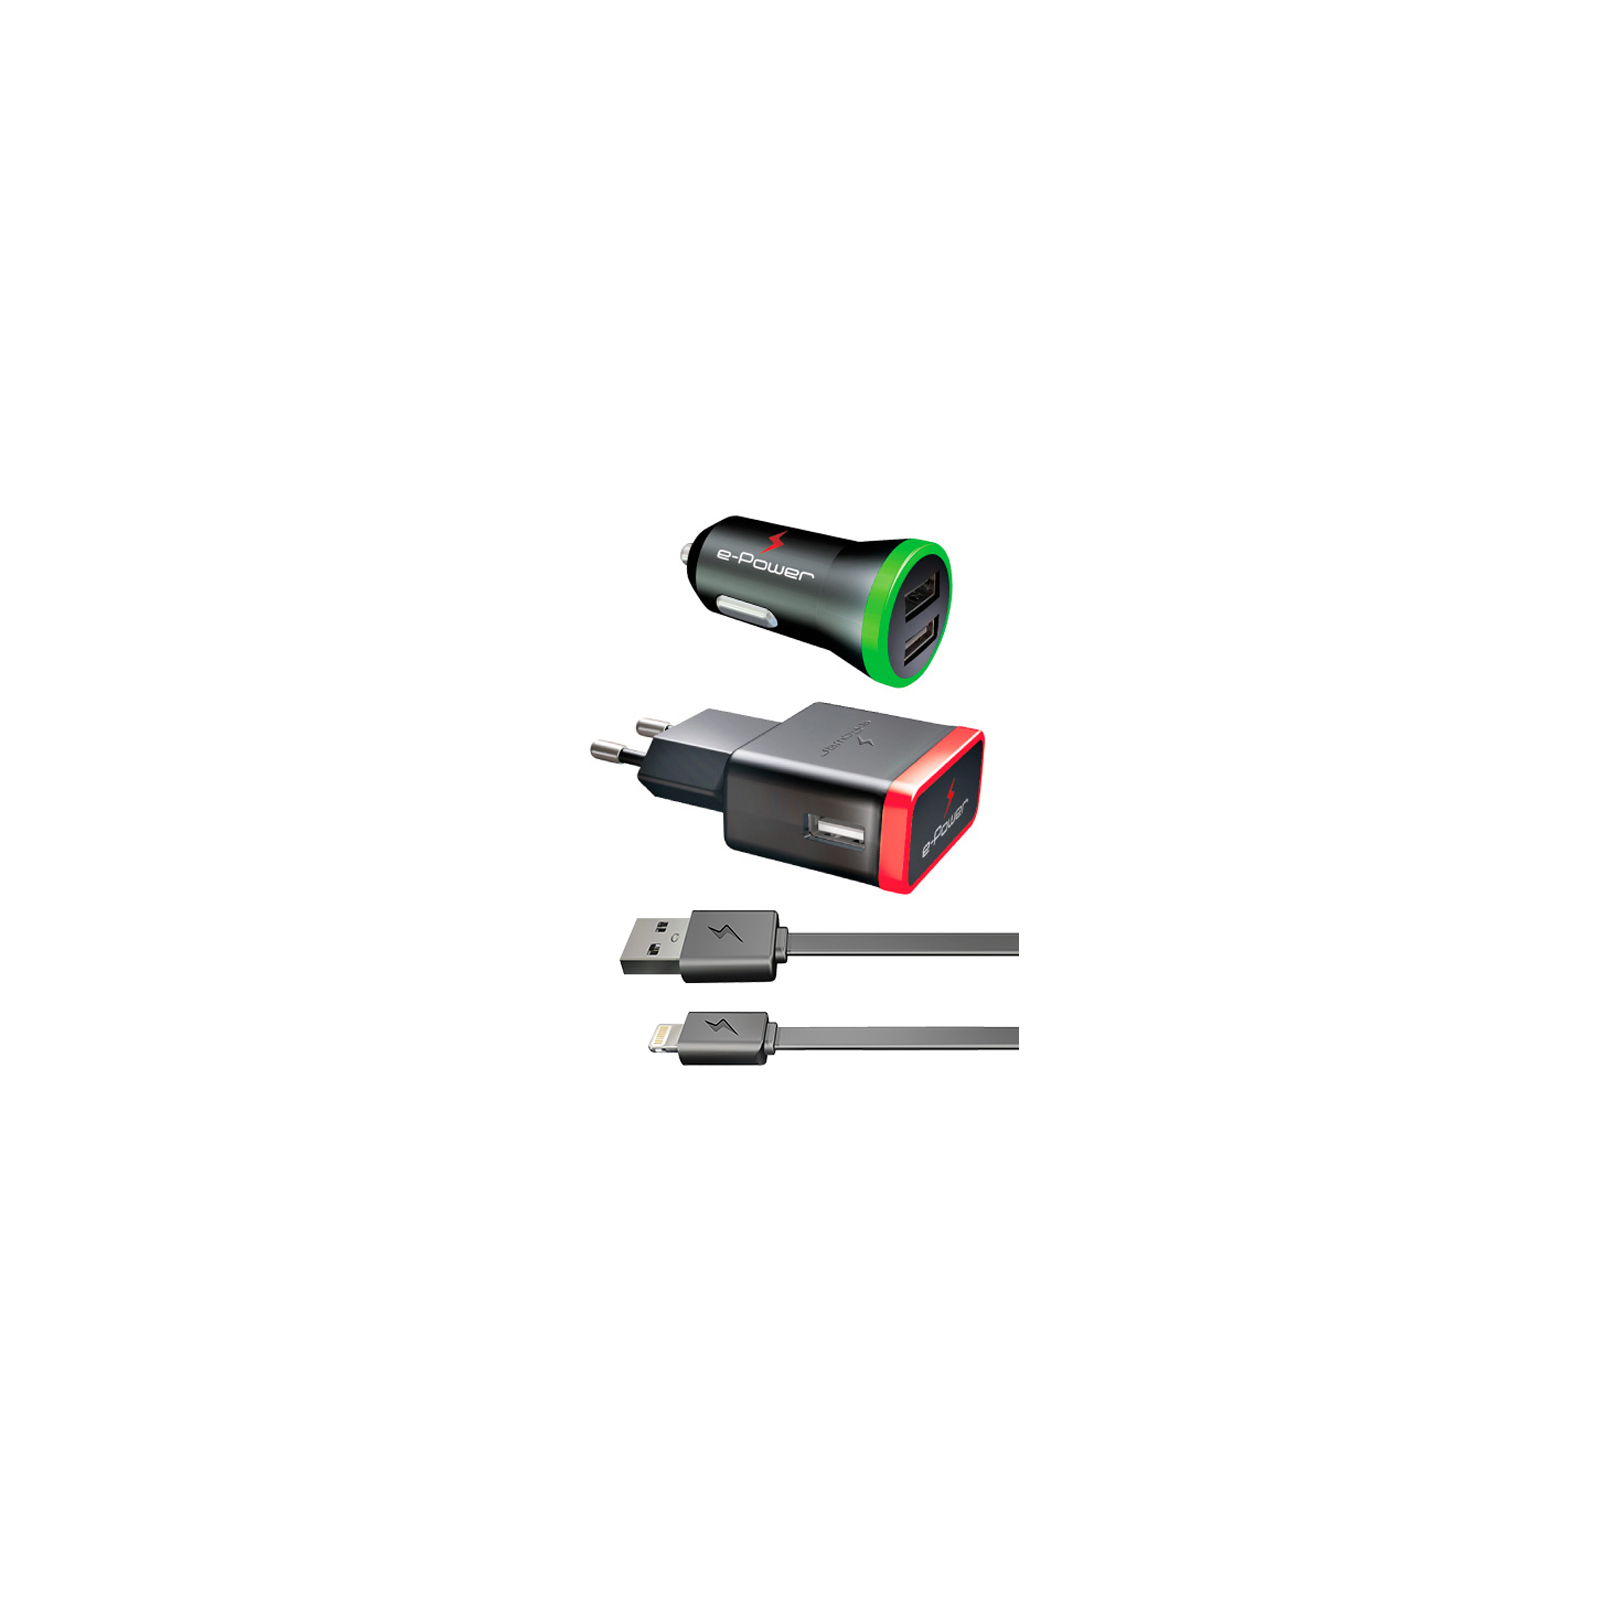 Зарядний пристрій E-power Комплект 3в1 2 * USB 2.1A + кабель Lightning (EP812CHS) зображення 2